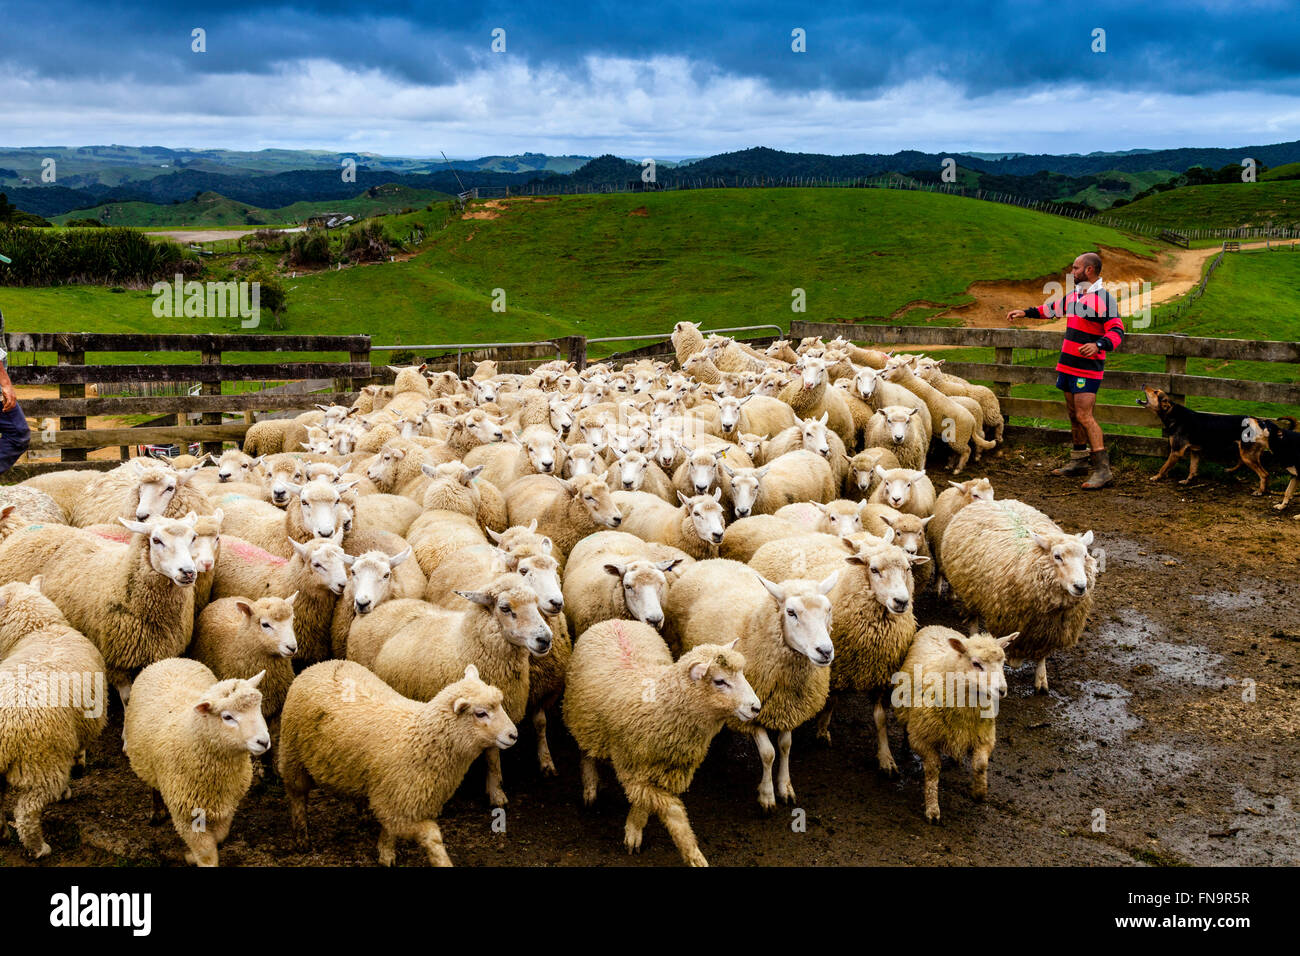 Sheep In A Sheep Pen Waiting To Be Sheared, Sheep Farm, Pukekohe, New Zealand Stock Photo